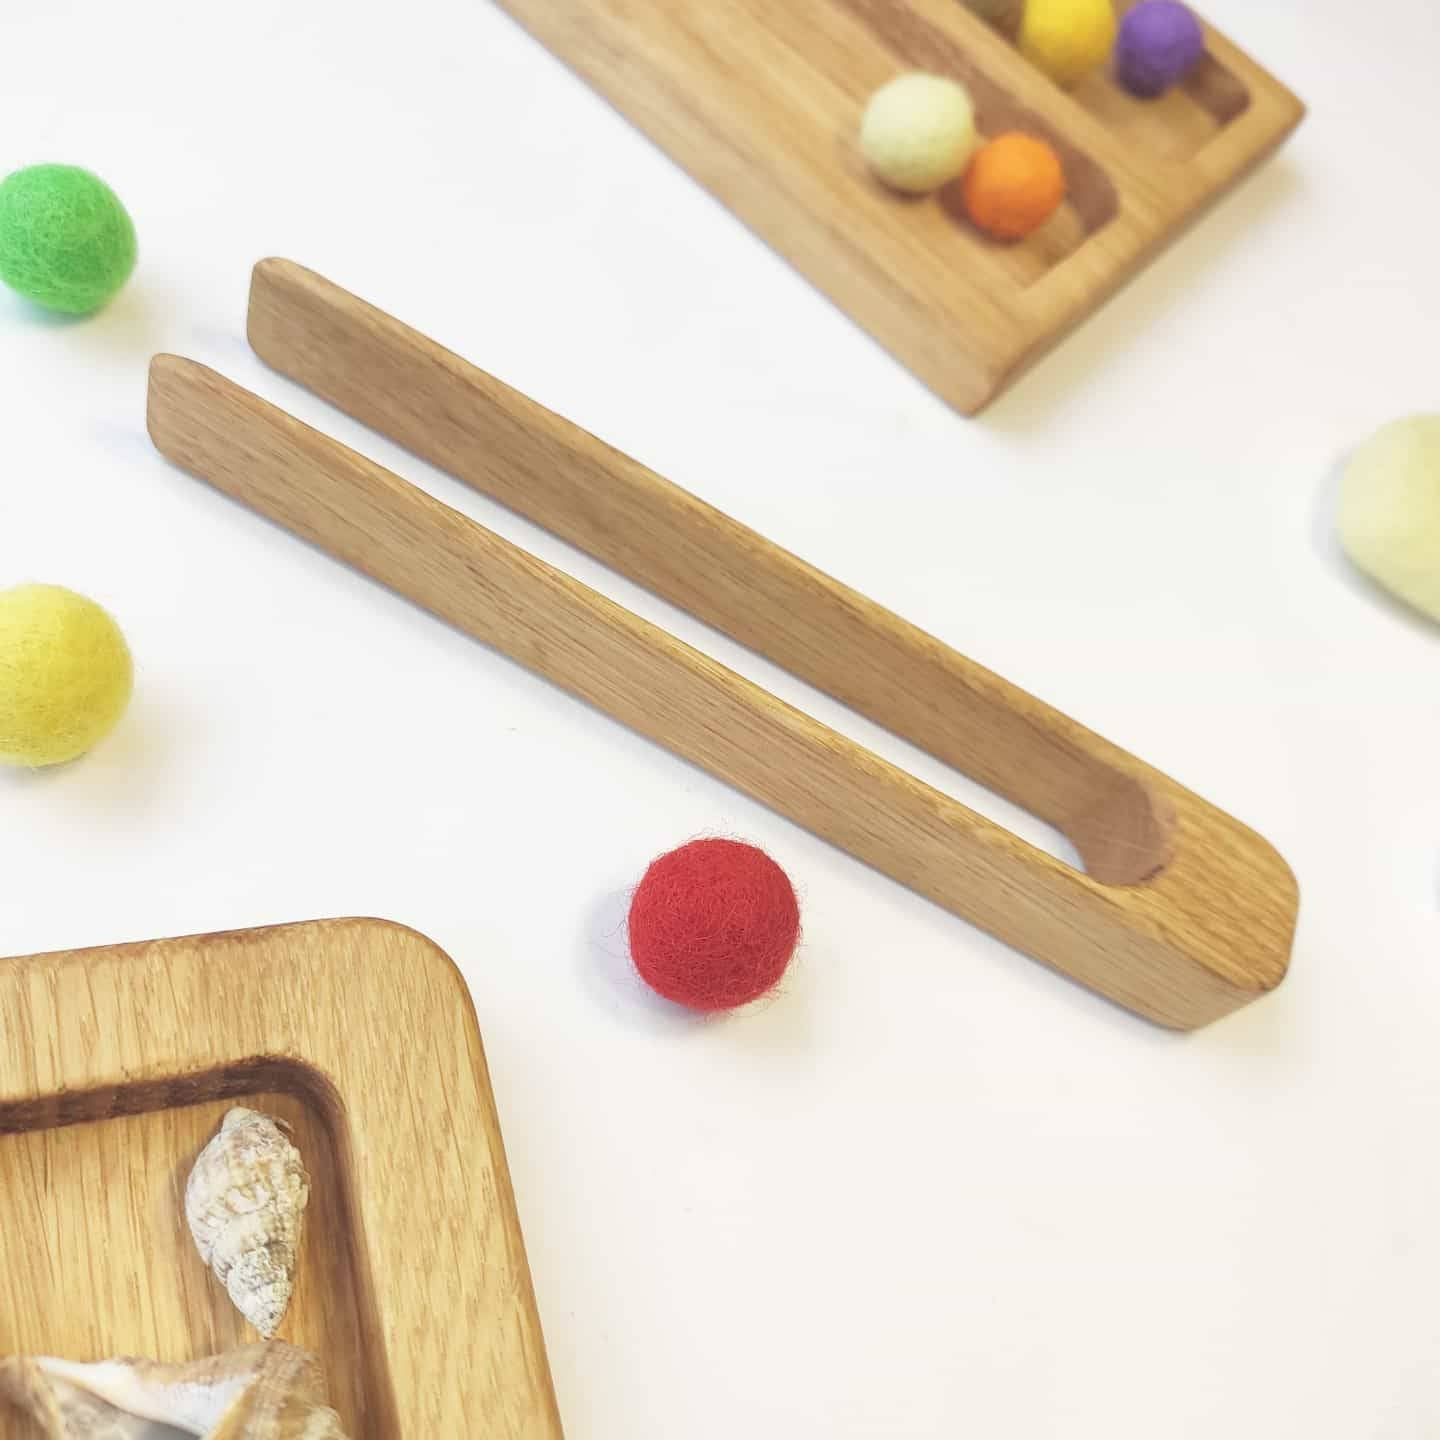 Montessori wooden tweezers or tongs